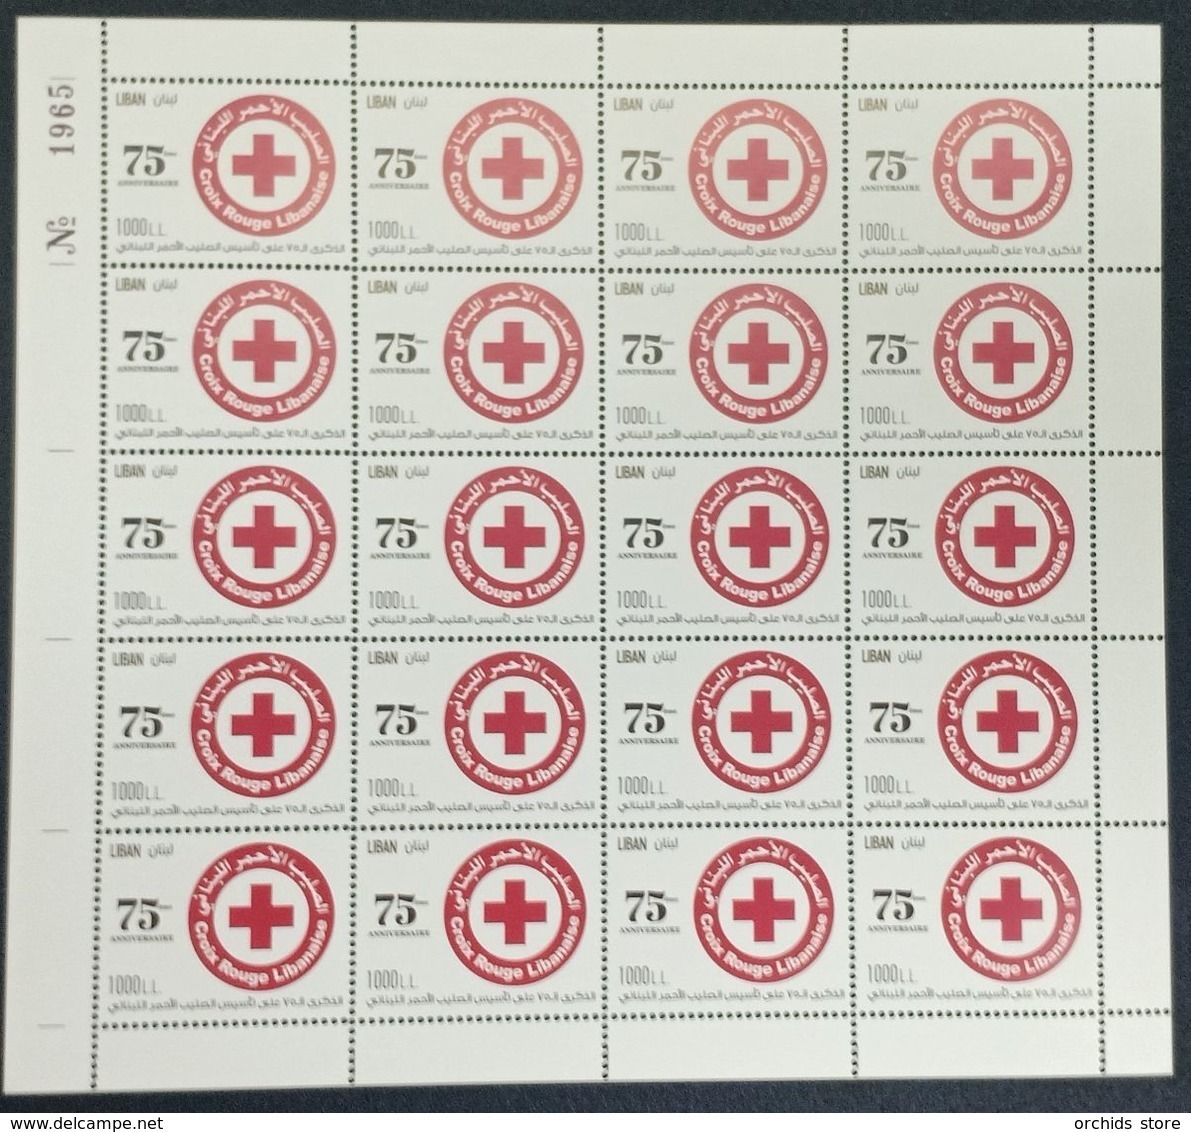 Lebanon 2020 New MNH Stamp - 75th Anniv Of Lebanese Red Cross & Coronavirus Covid-19 Crisis - FULL SHEET - Lebanon